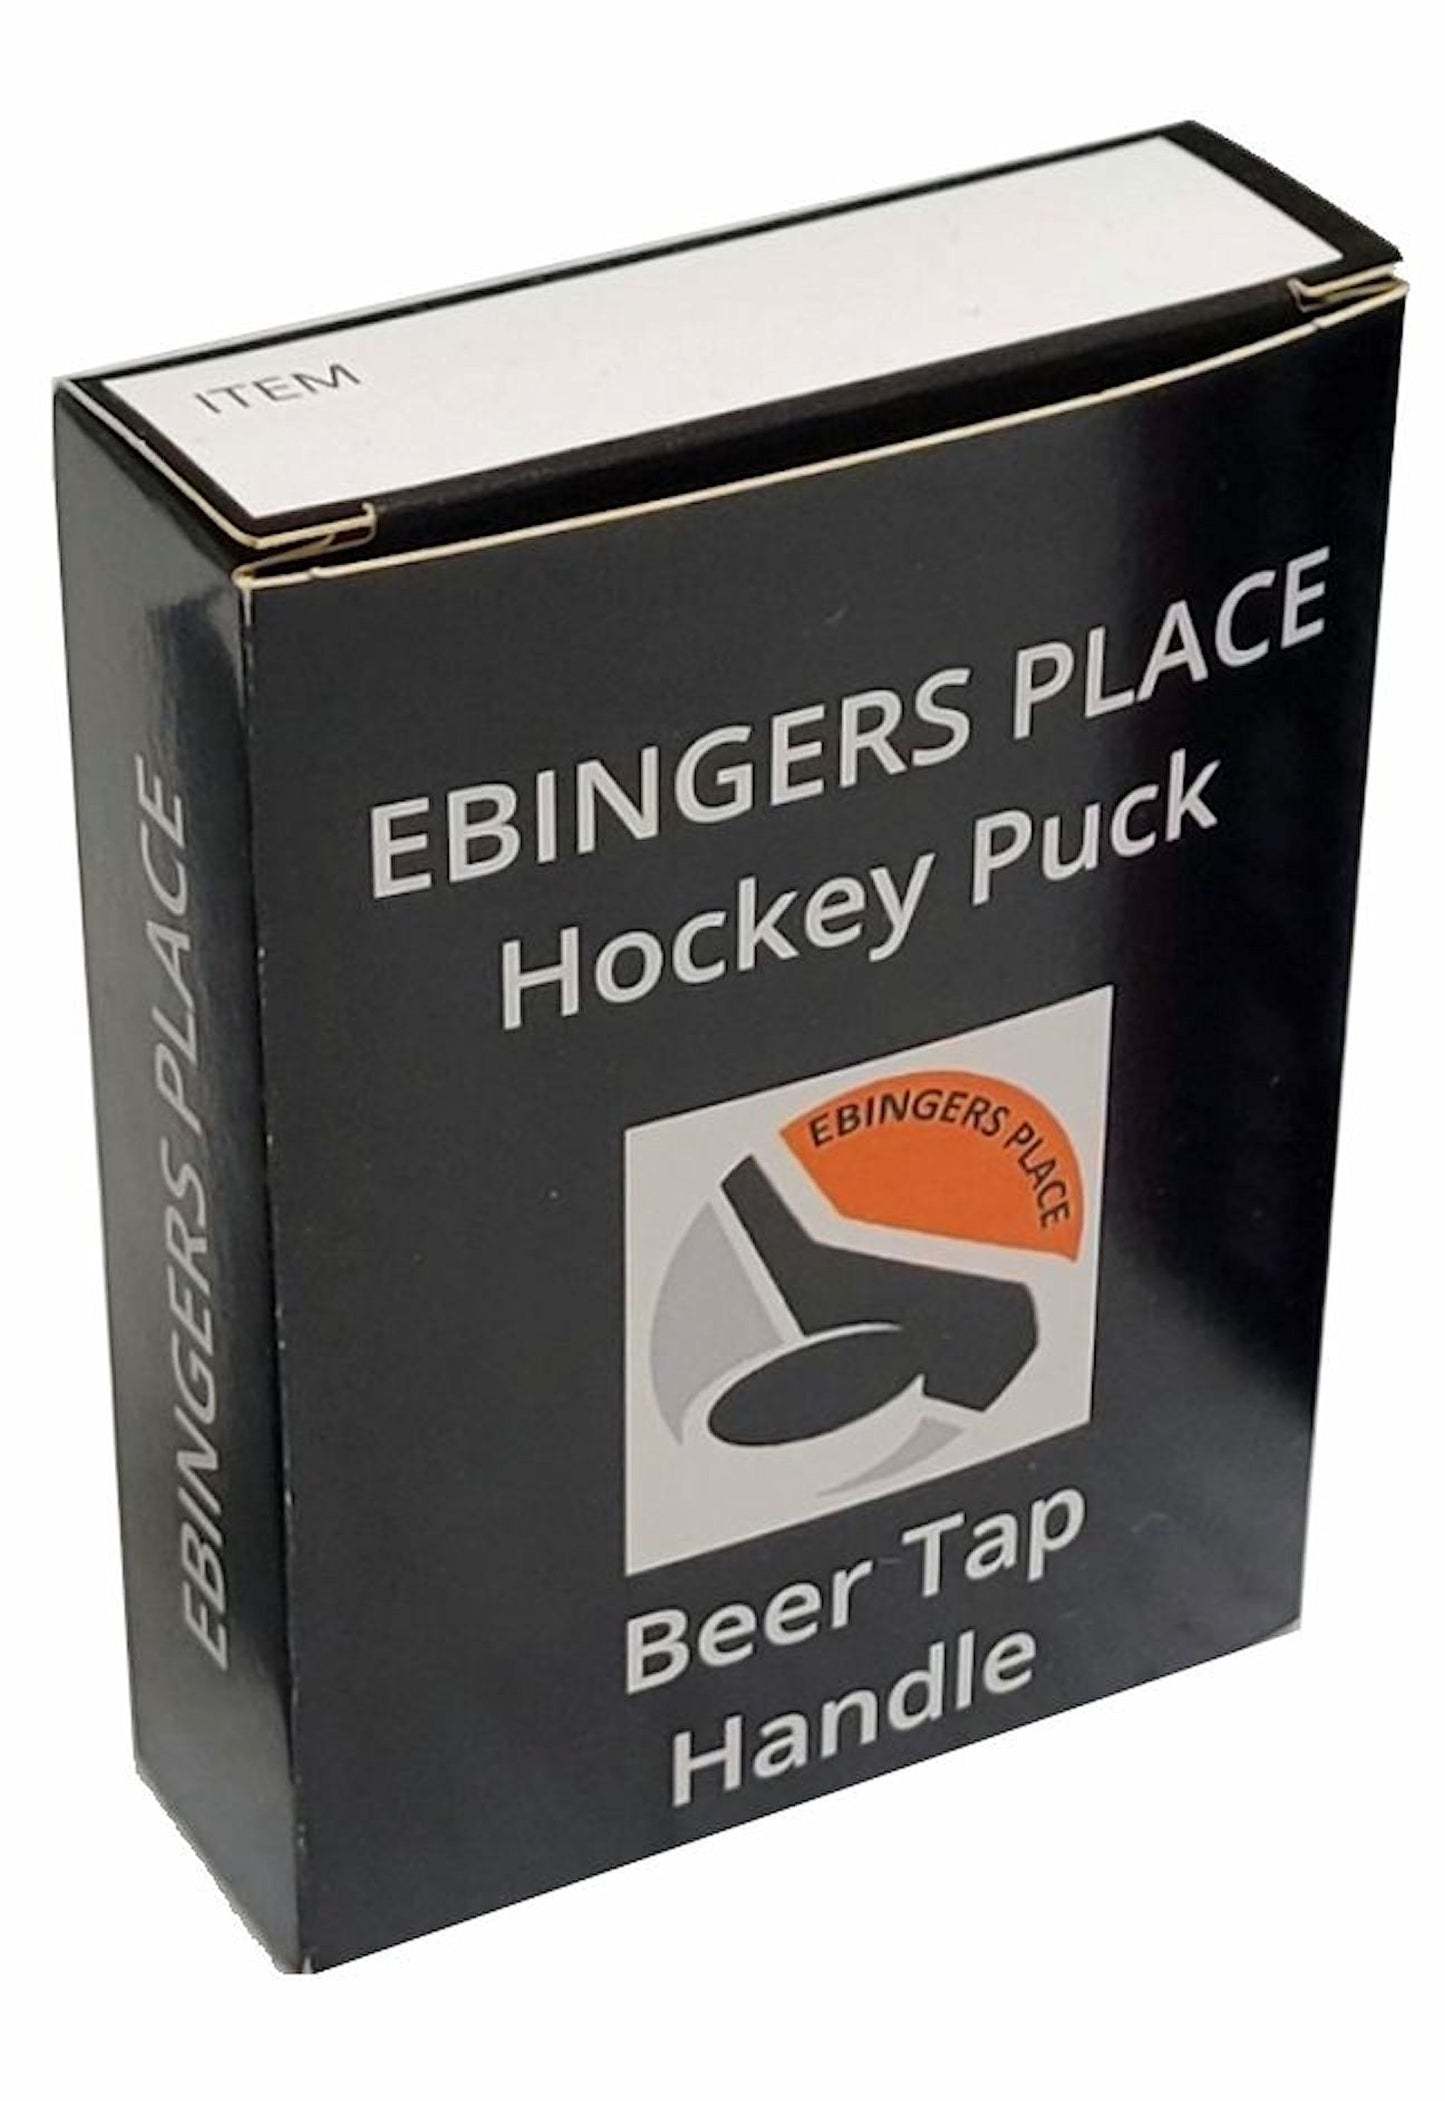 St Louis Blues Reverse Series Hockey Puck Beer Tap Handle